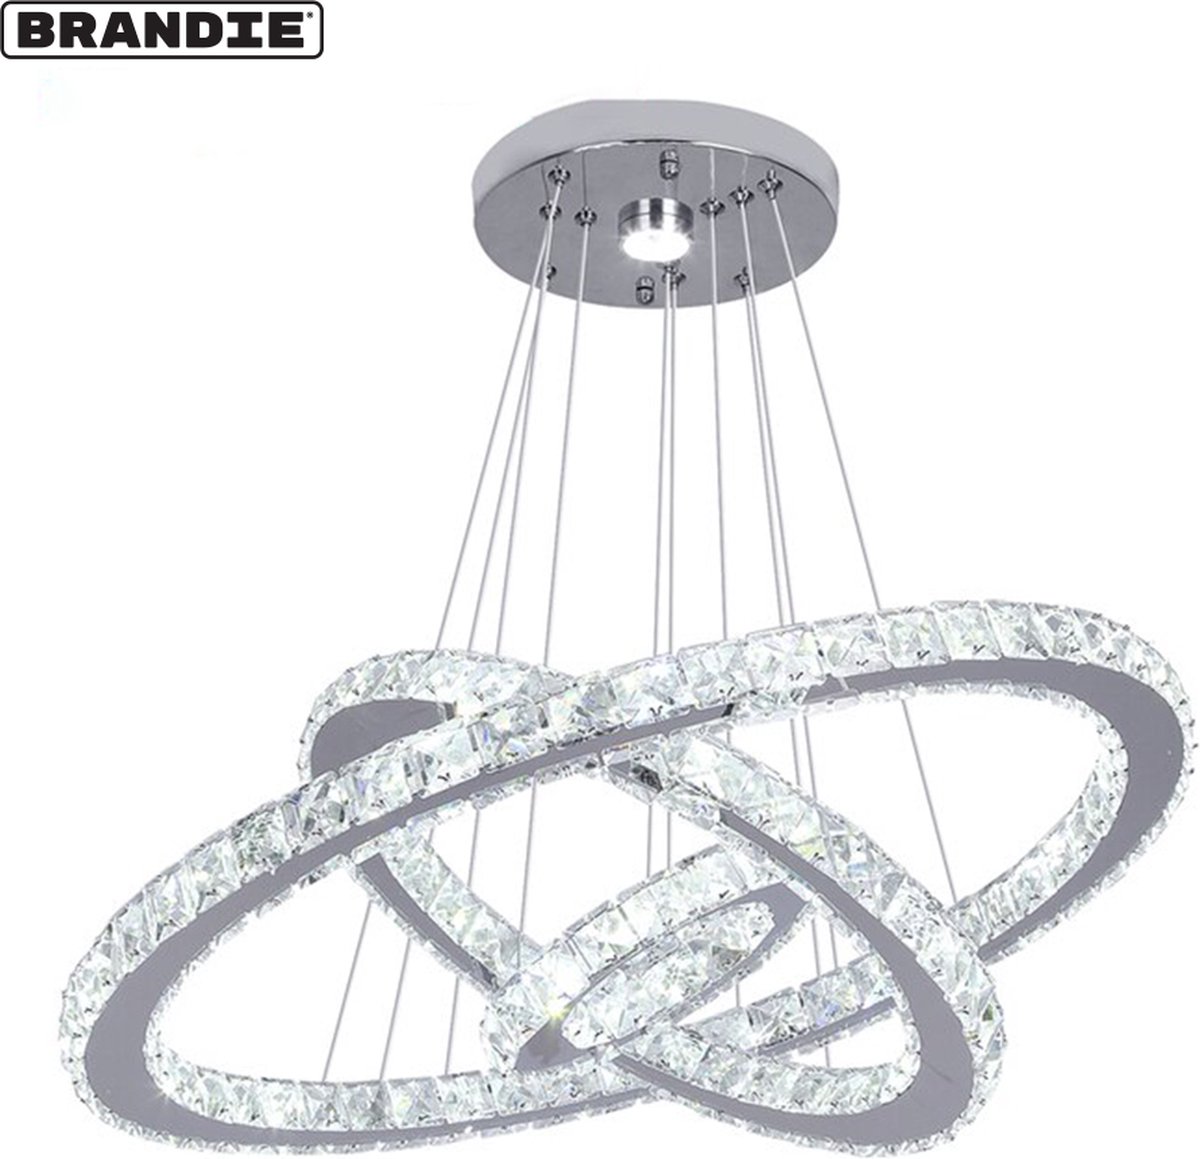 Brandie® - LED Hanglamp - Verstelbare Ronde Hanger - Top Luxe Groot Formaat - 3 Kleuren Veranderlijk - Eersteklas K9 Heldere Kristallen - Hoogwaardig Roestvrij Staal - Breed Bereik Binnenshuis - 3 Ringen 60x40x20cm